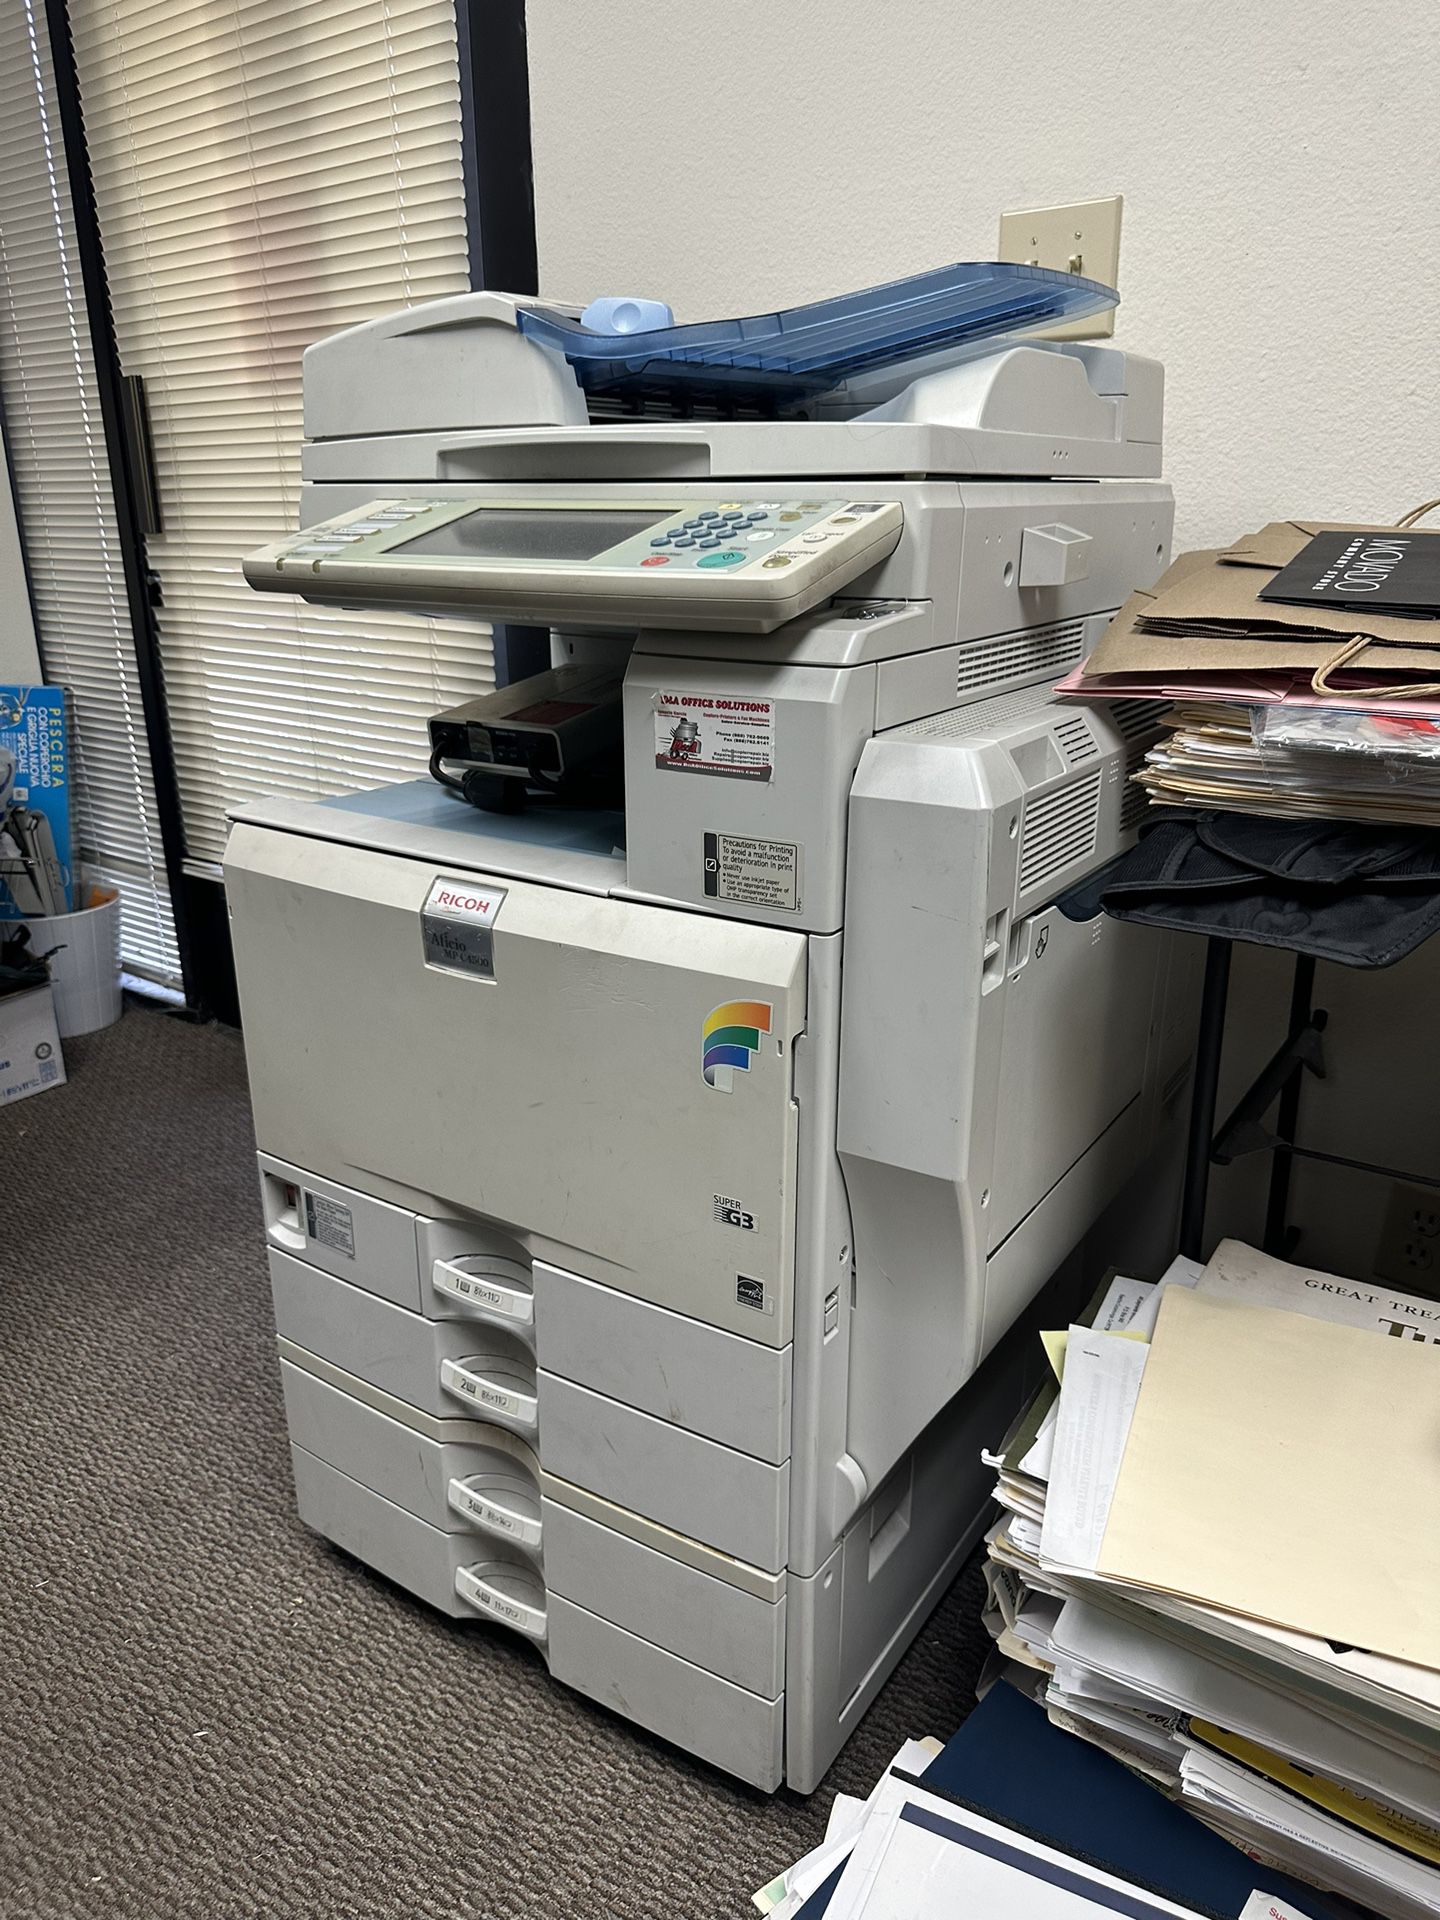 Ricoh Mp C4500 Printer Station